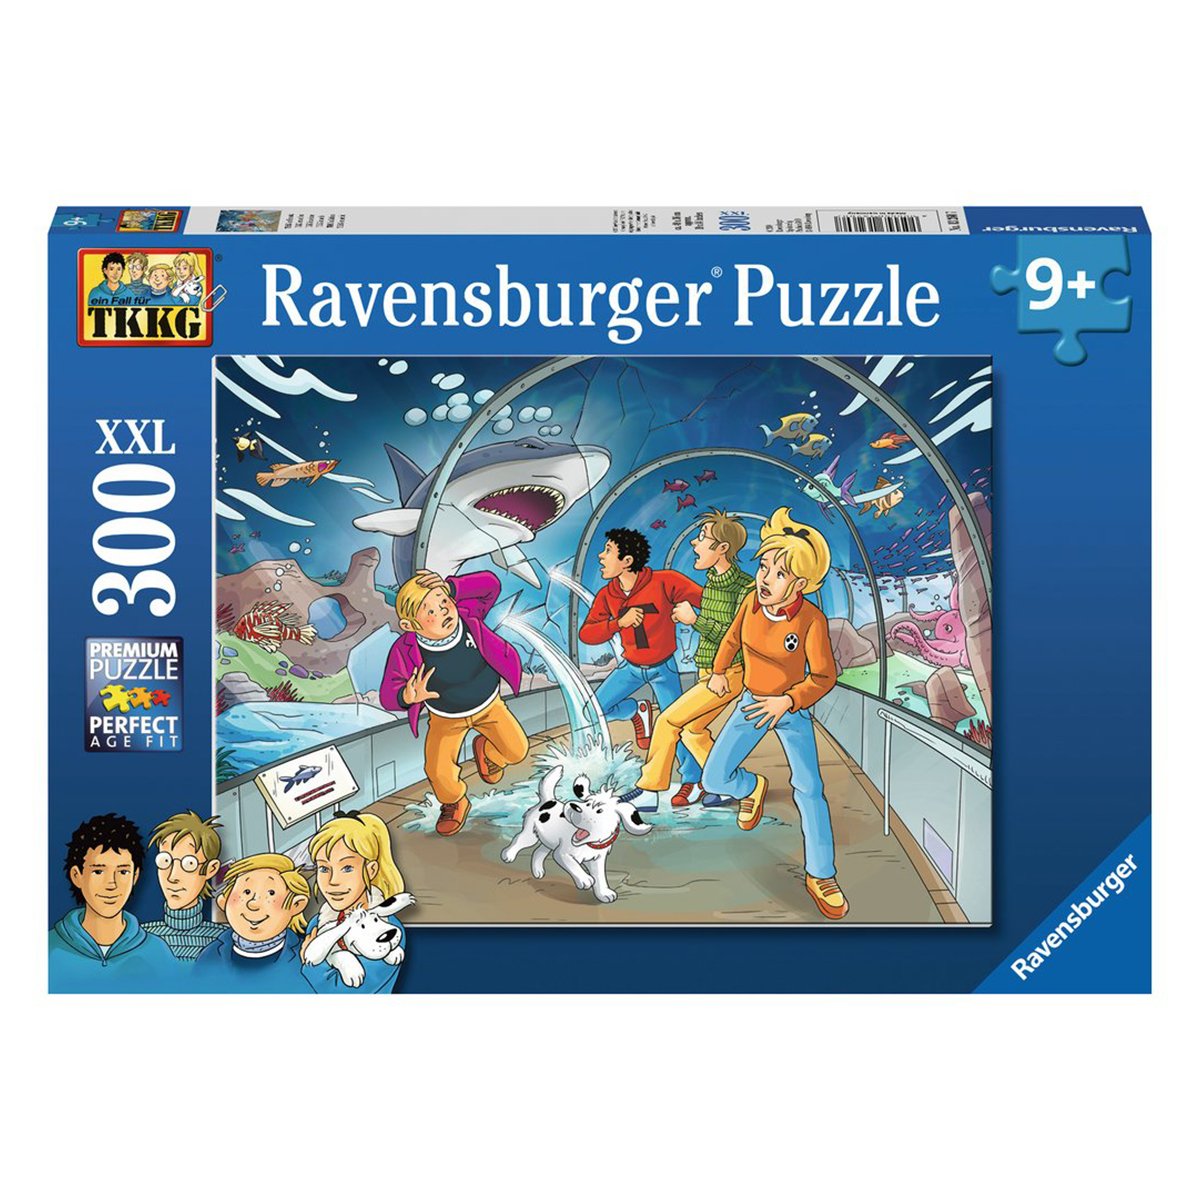 TKKG Spiel: Ravensburger Puzzle – TKKG im Einsatz